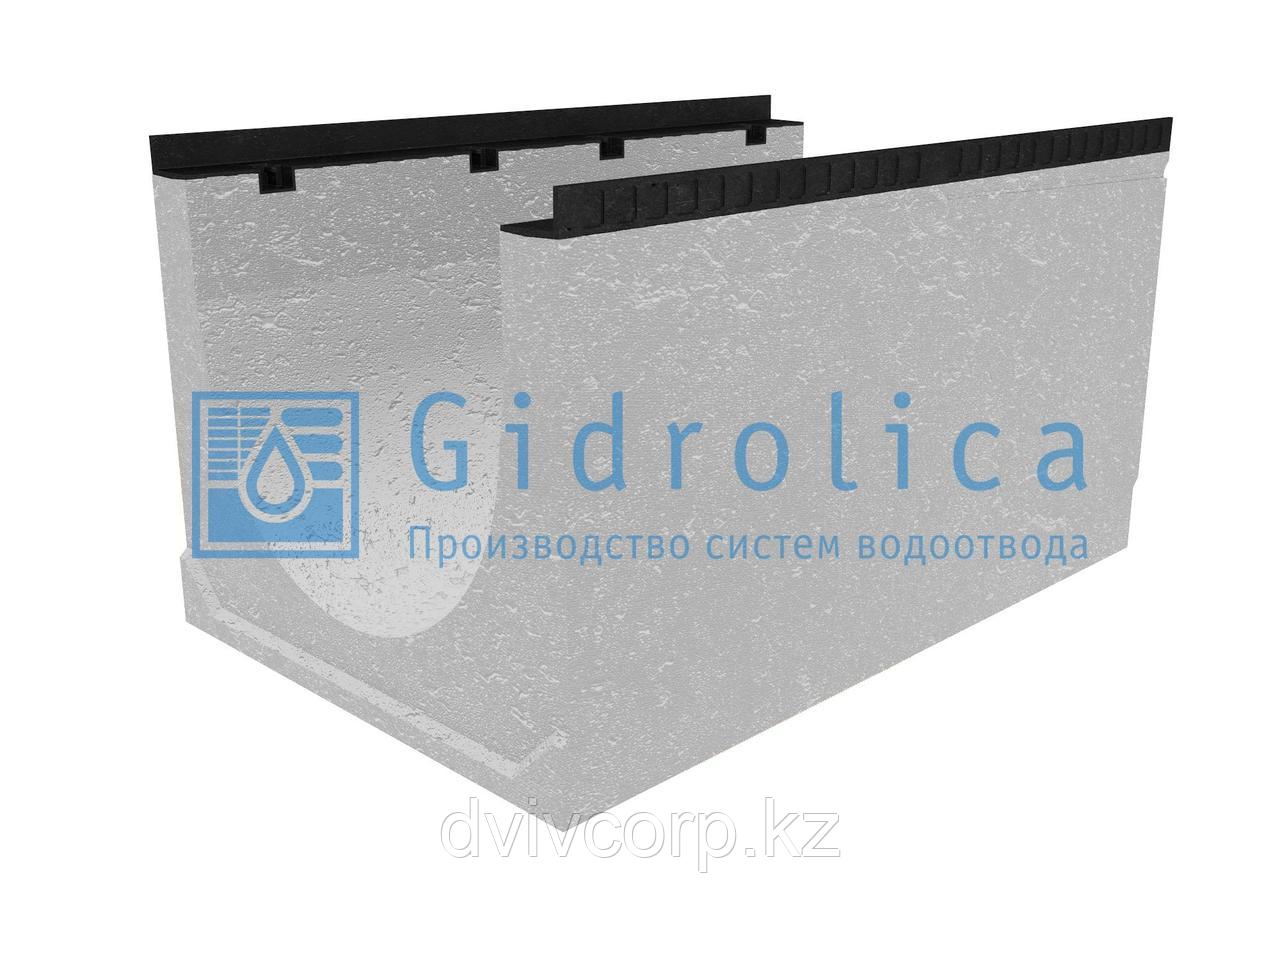 Лоток водоотводный бетонный коробчатый (СО-500мм)KU 100.65(50).55(46) - BGM, № 20-0